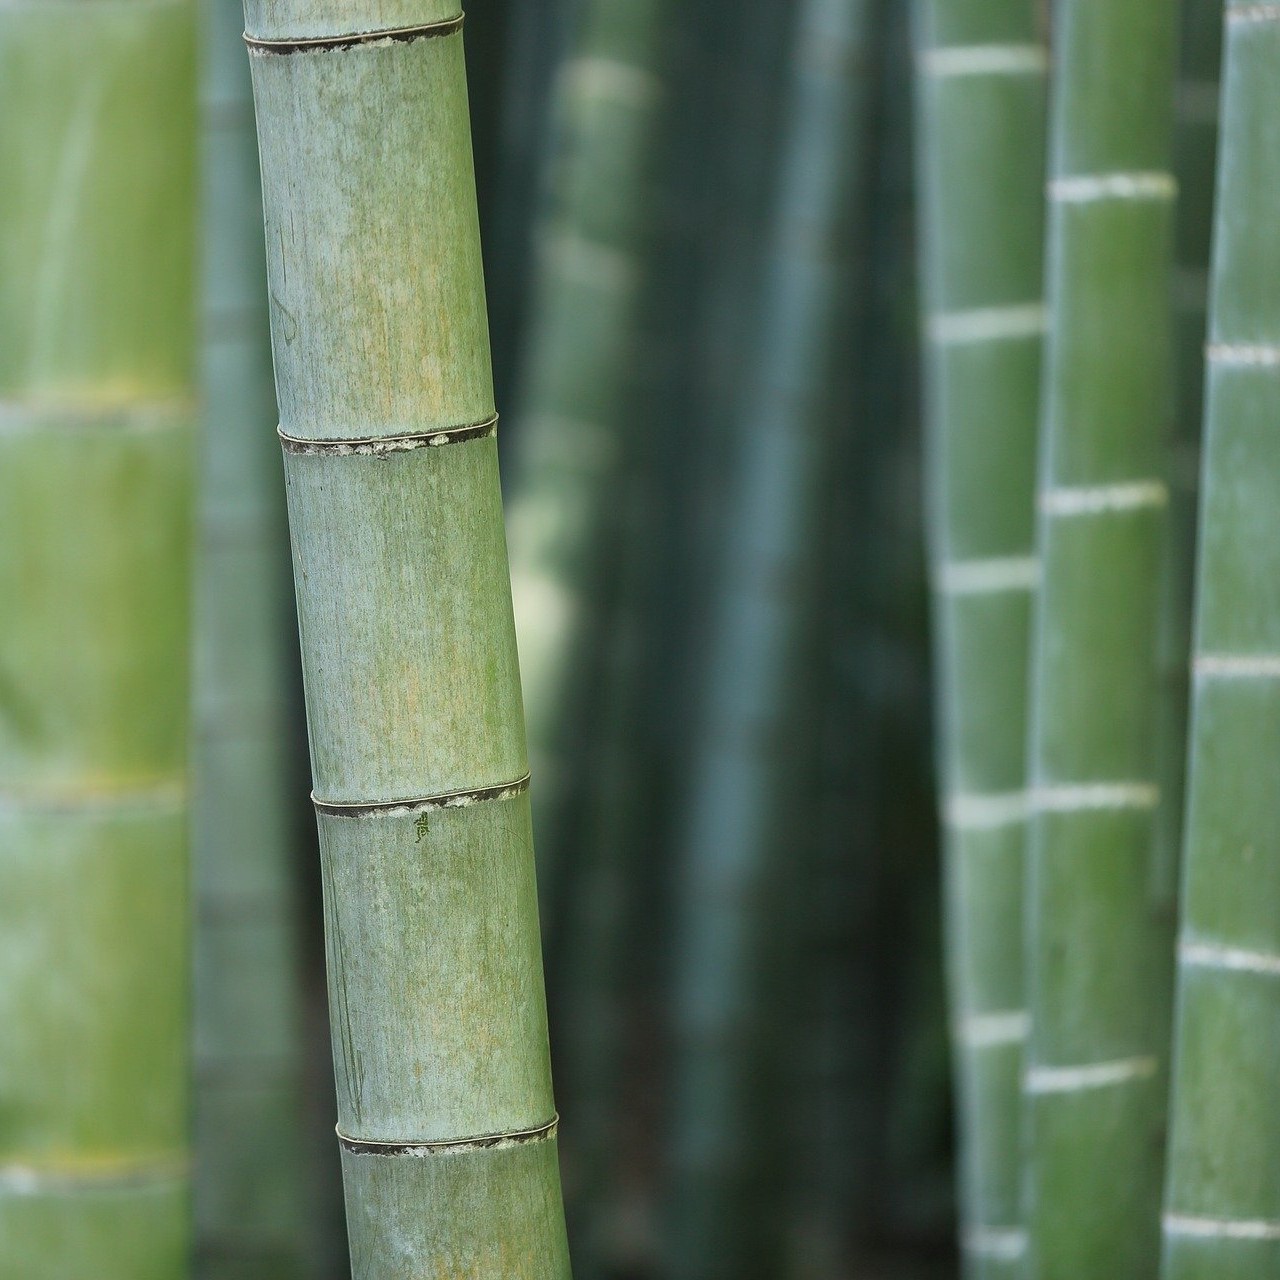 Ein Ausschnitt grüner Bambusstämme.